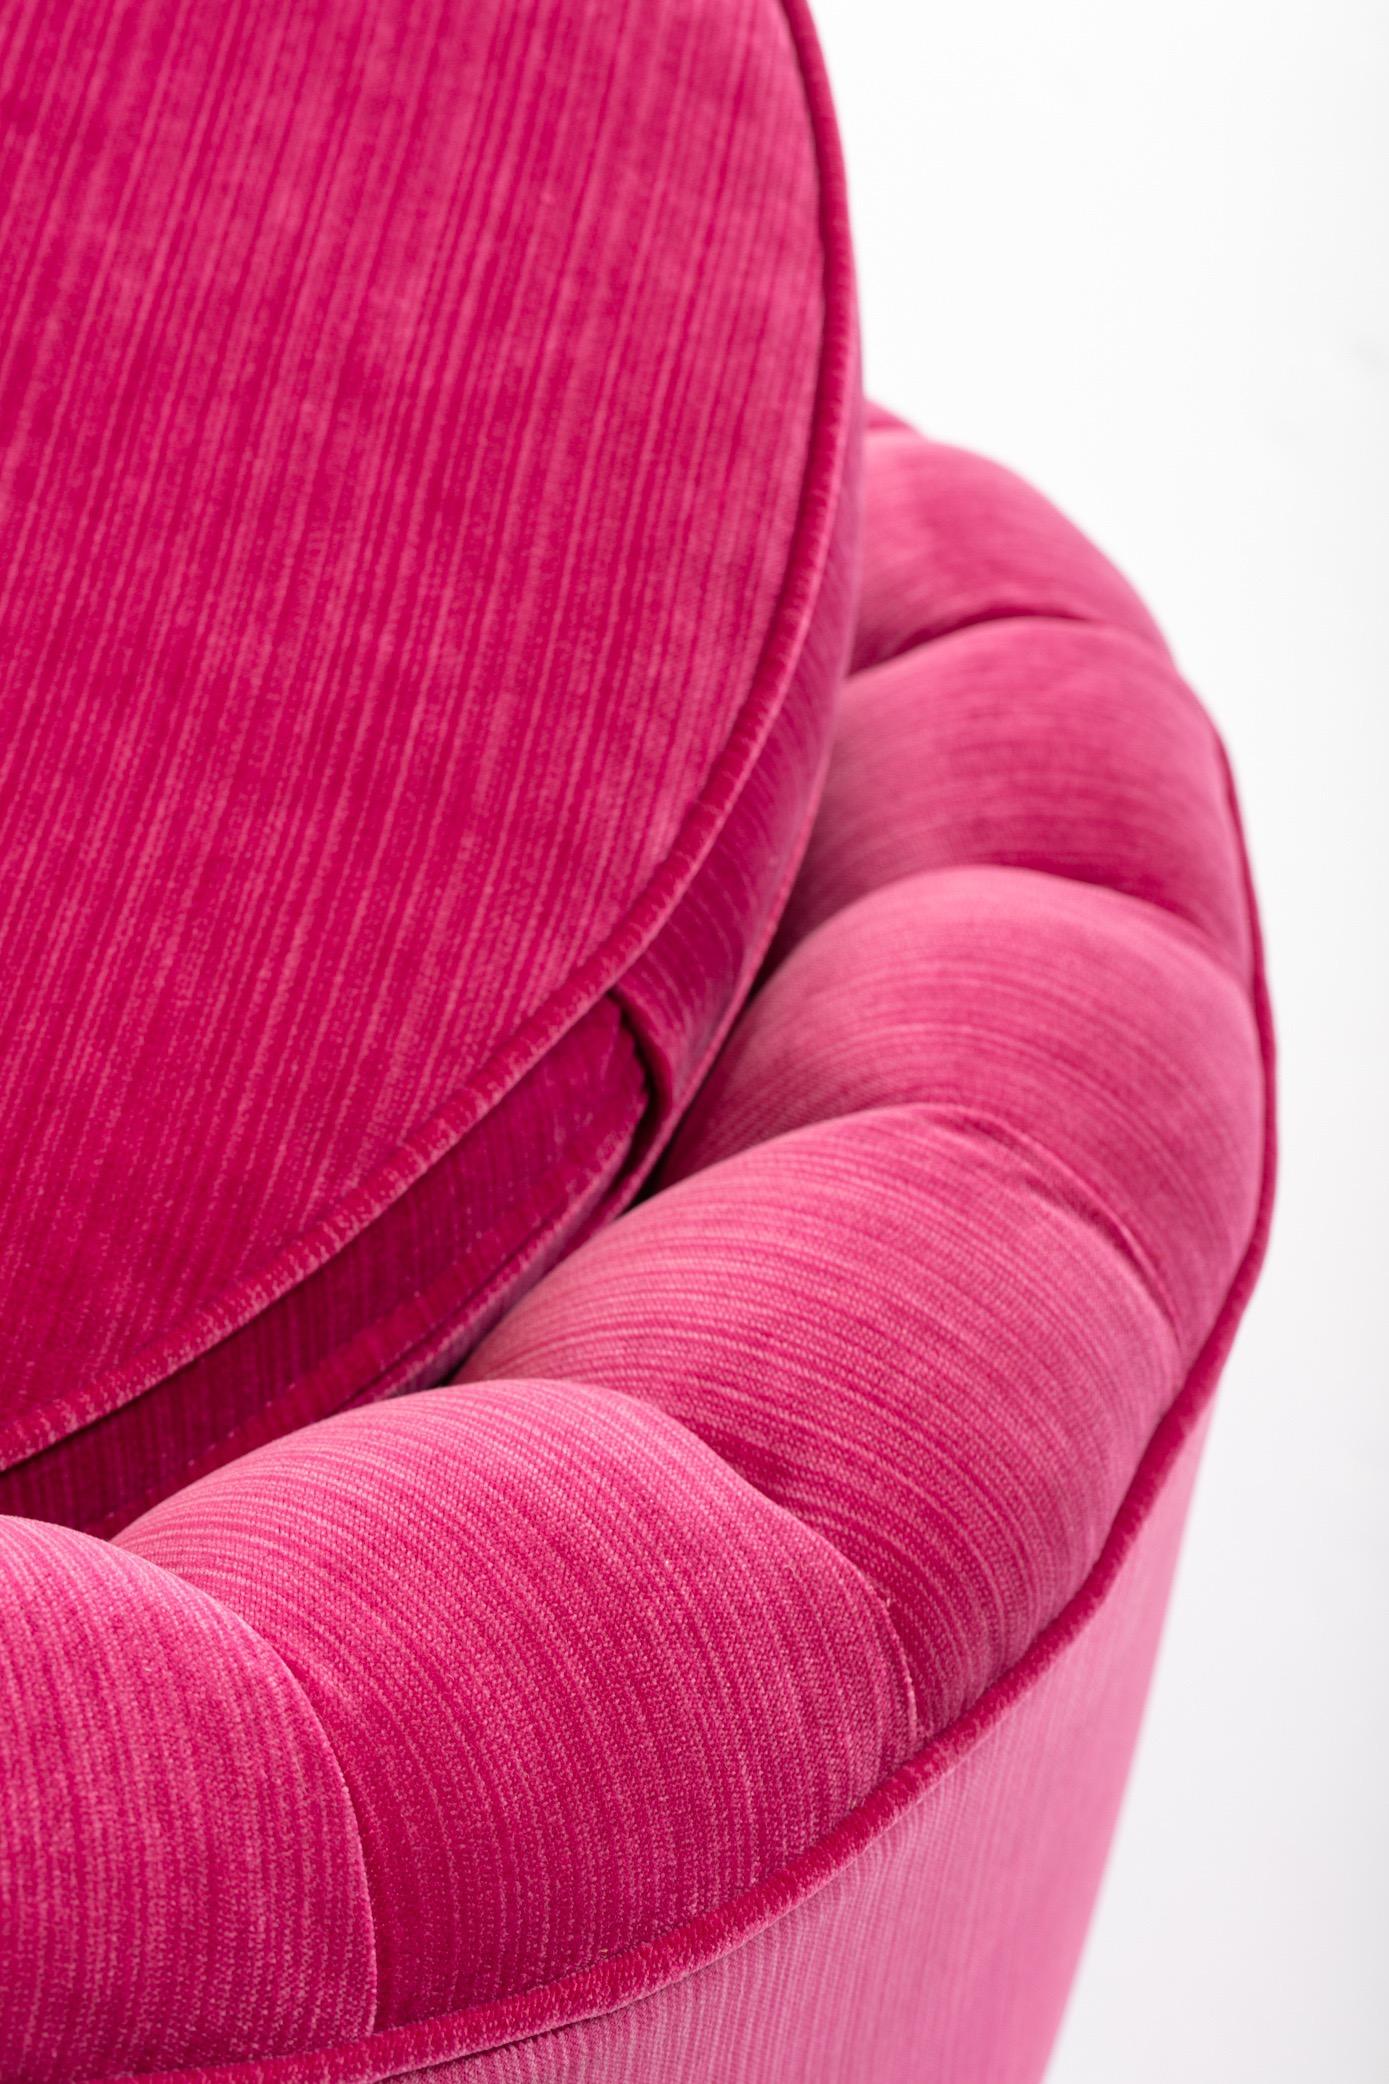 Pair of Hollywood Regency Asymmetrical Slipper Chairs in Hot Pink Strie Velvet 2